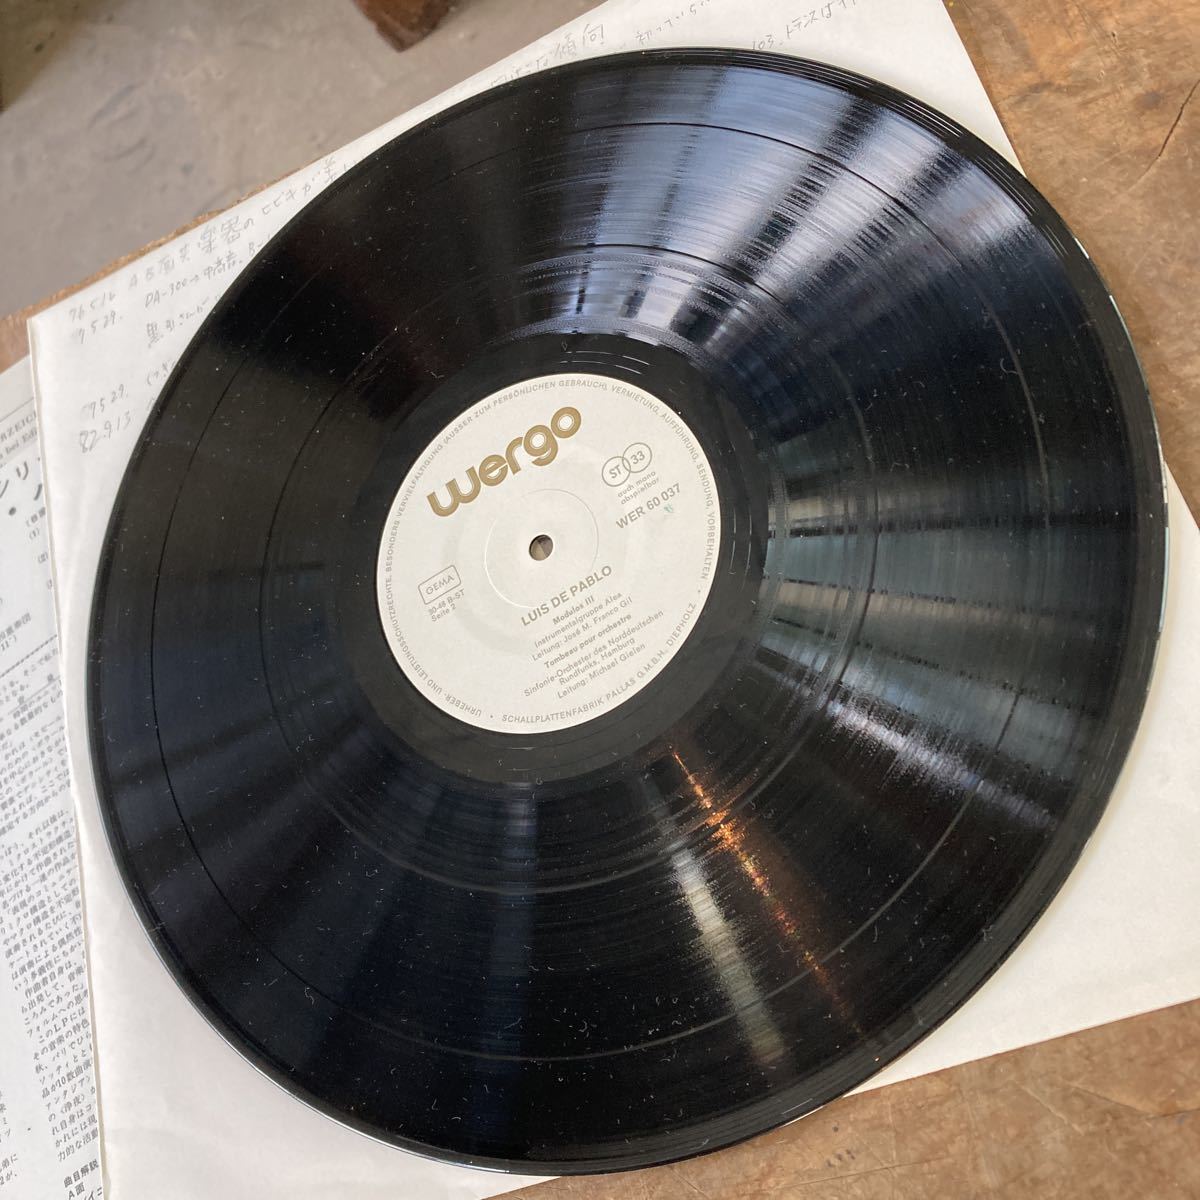 WERGO WER 60037 LUIS DE PABLO ルイス・デ・パブロ クラシック 現代音楽 レコード LP コレクション_画像3